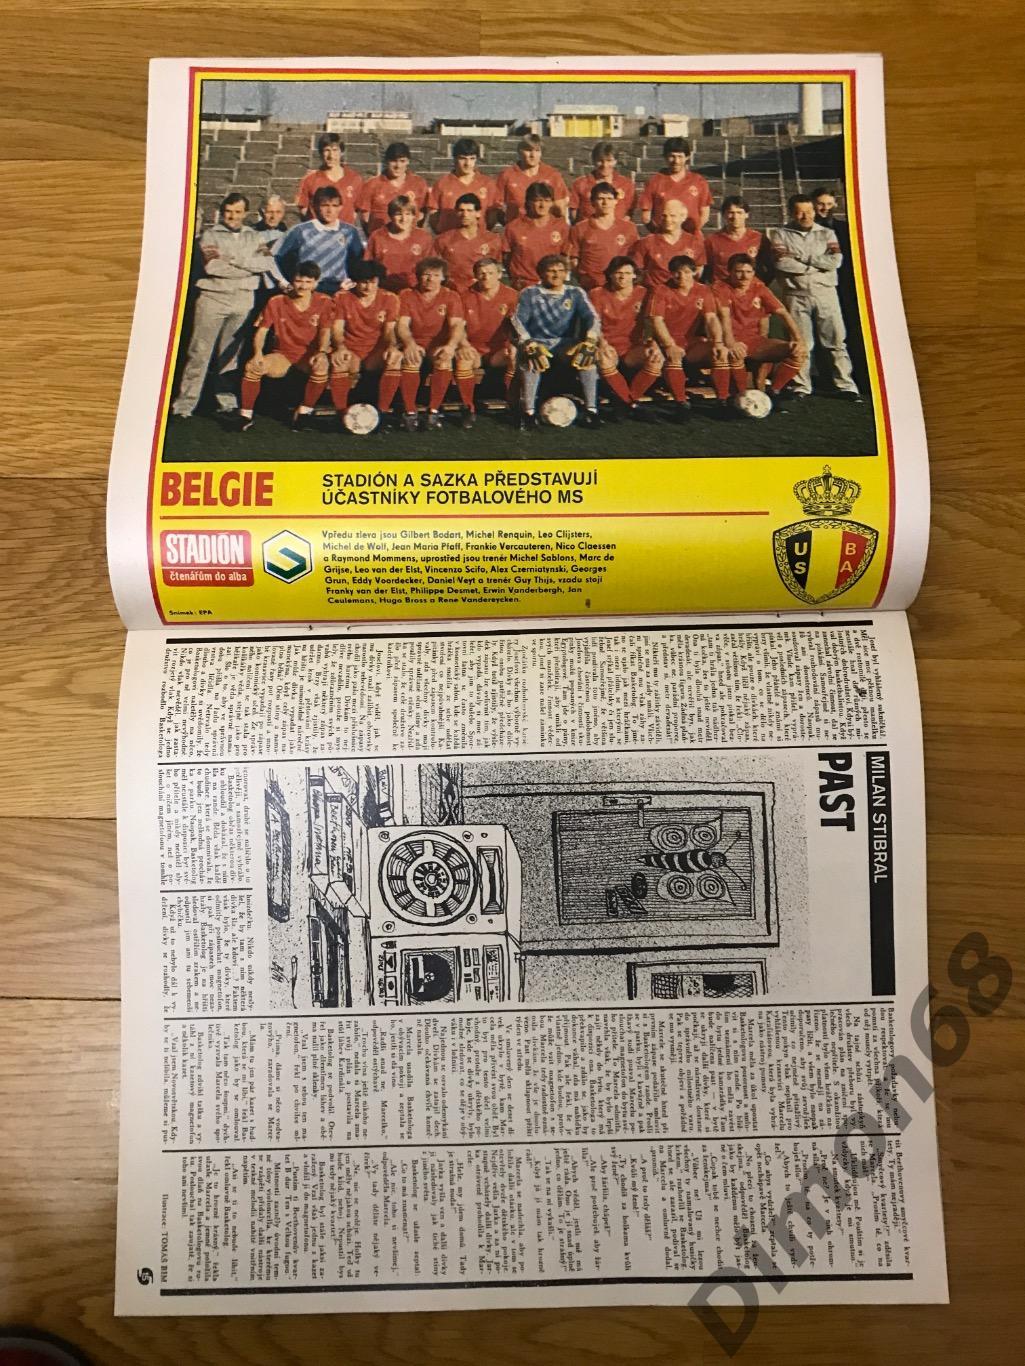 стадион номер 9 1986г постер сб бельгии 1